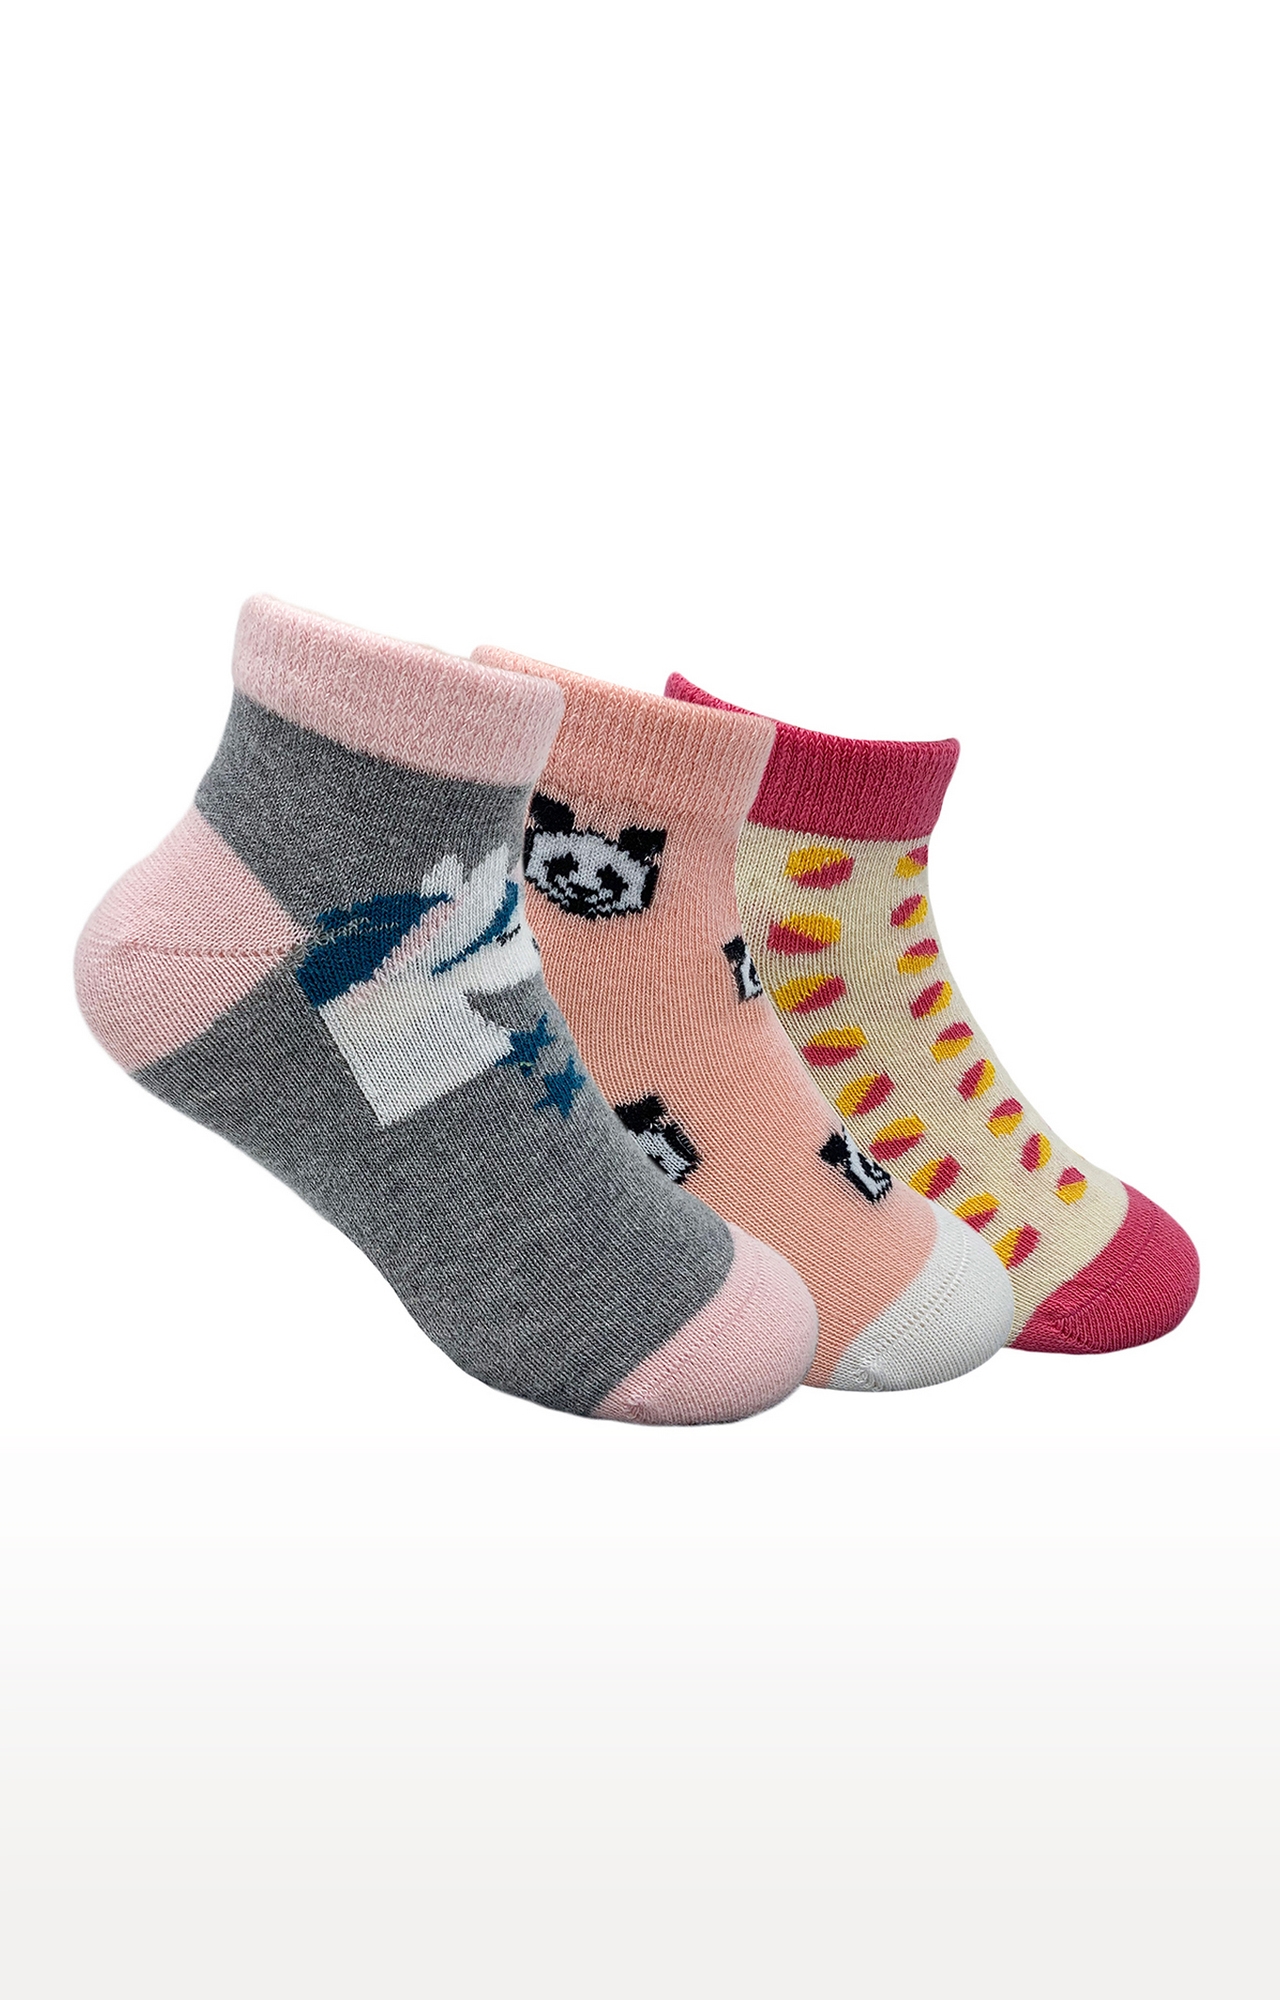 Mint & Oak | Mint & Oak Pretty In Pink Cotton Multi Ankle Length Socks for Kids - Pack of 3